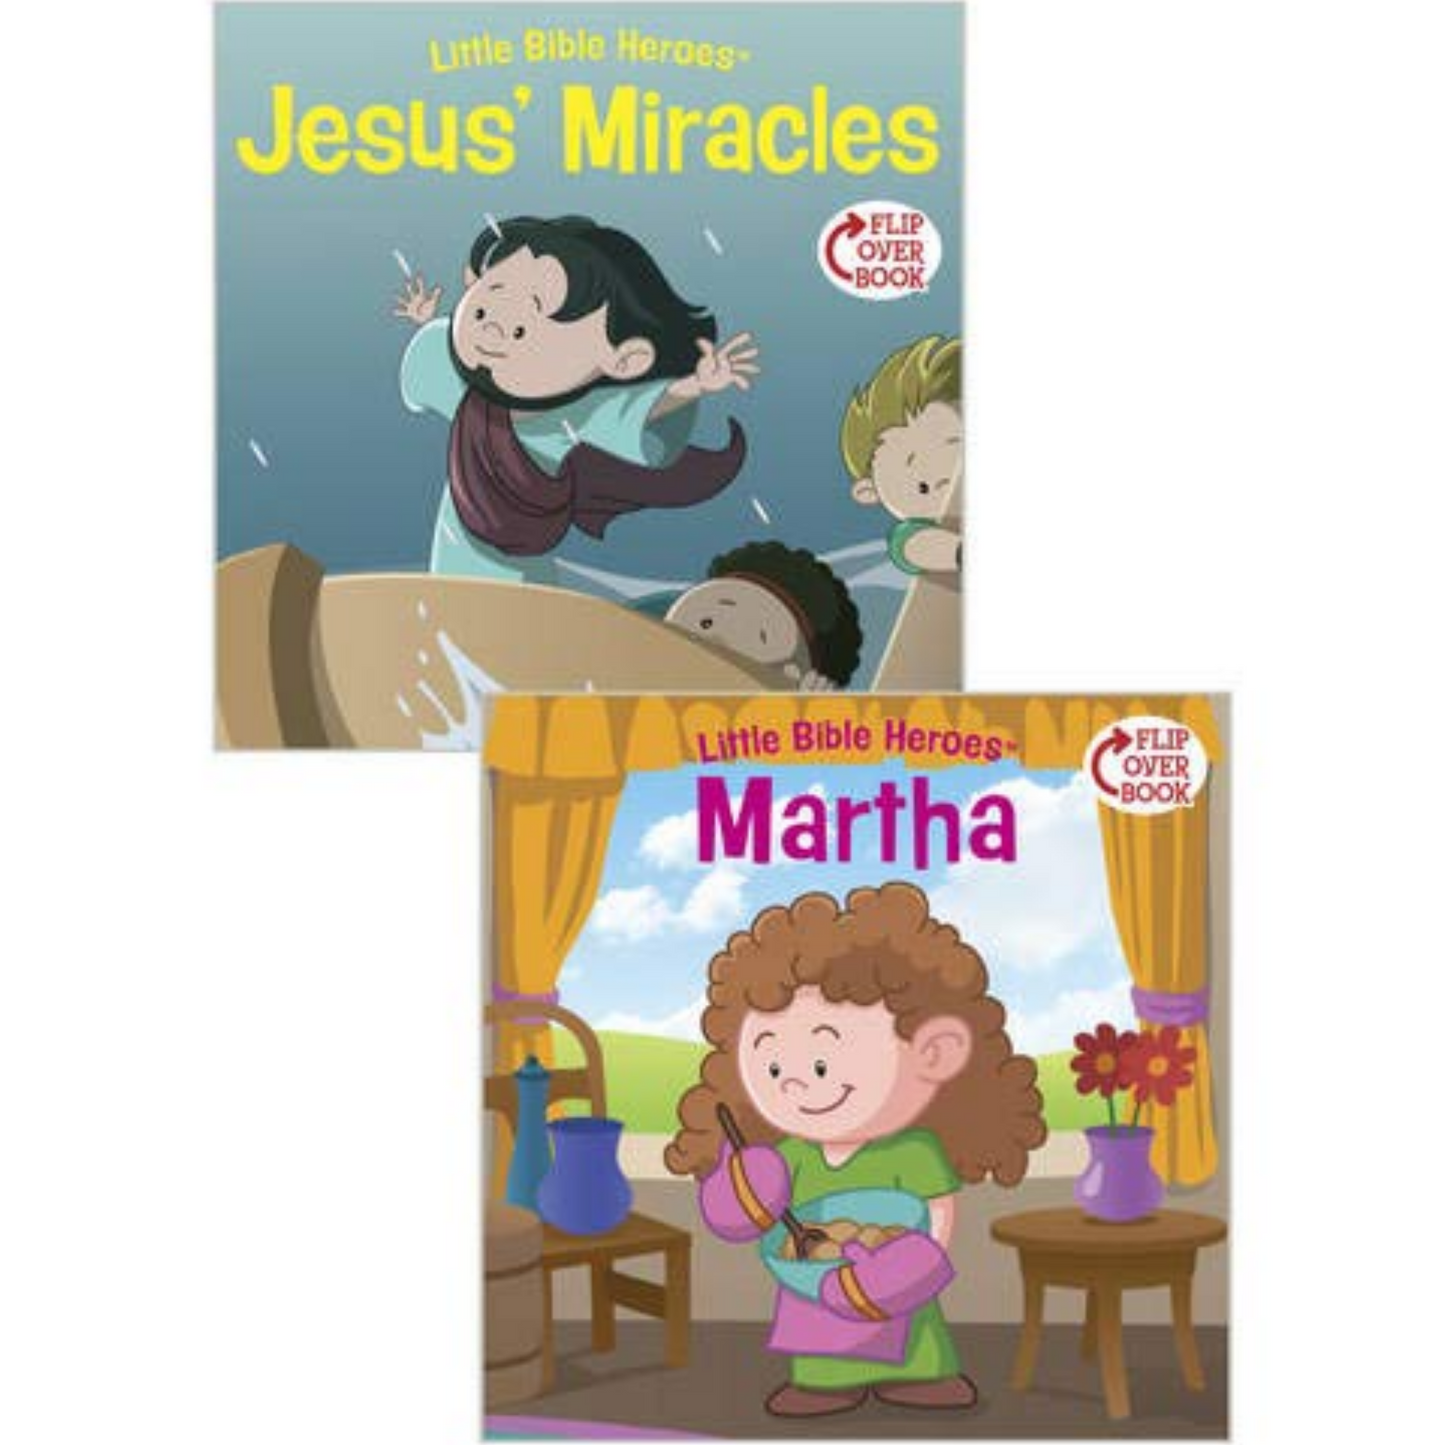 Little Bible Heroes: Flip-Over Book